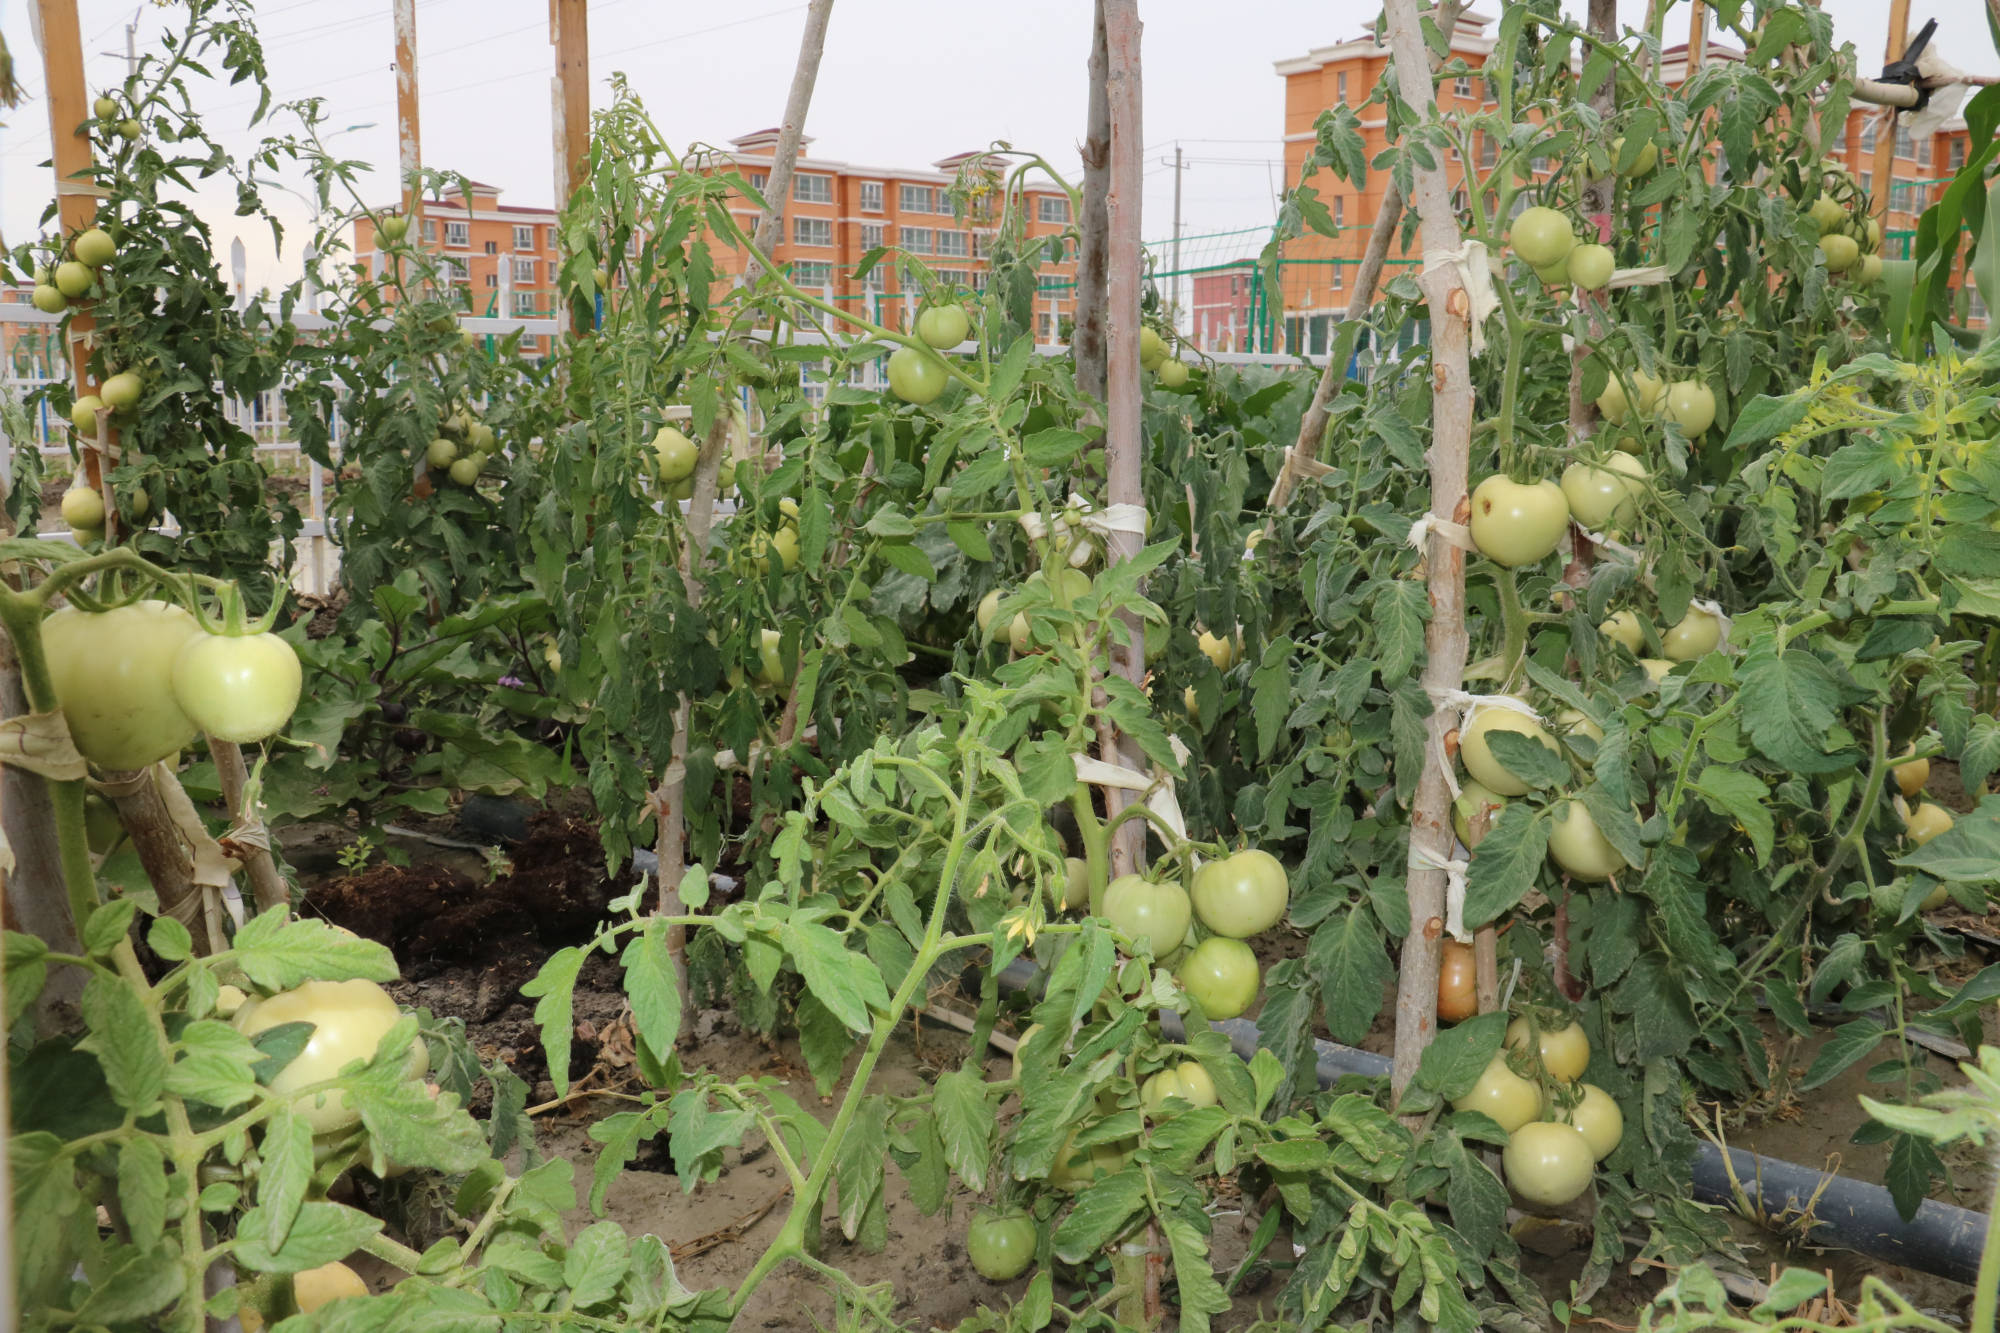 蔬菜采摘园初见高效益 绿色蔬菜走进居民家中